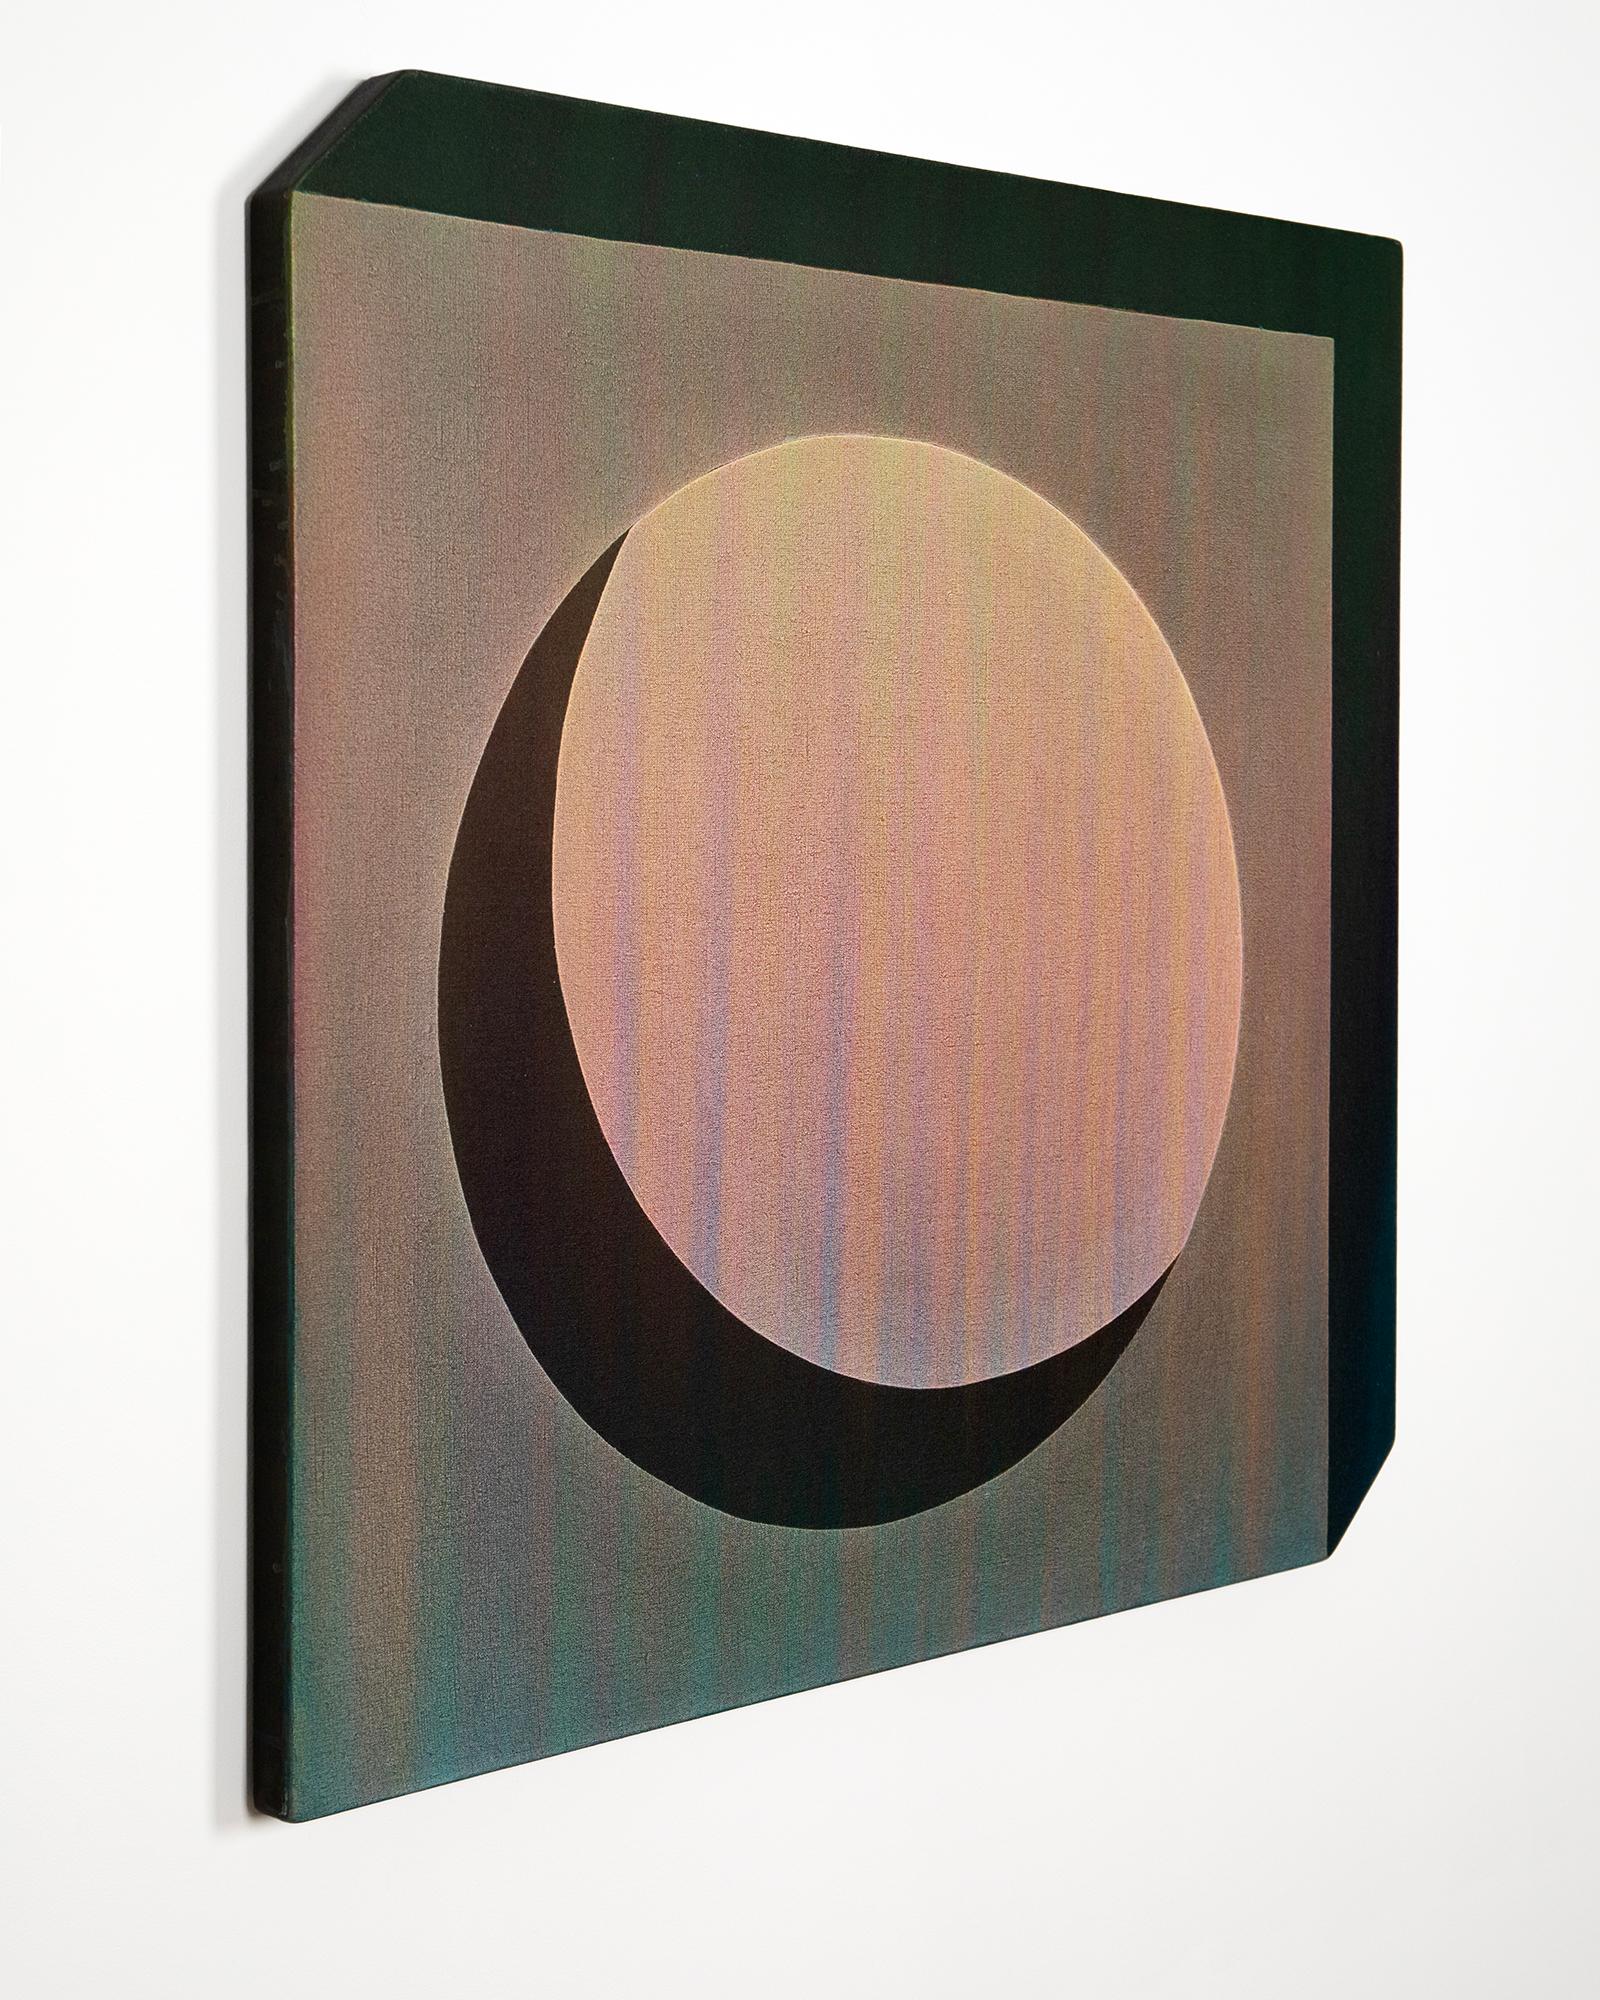 Morgan Sims

Eclipse

37” x 37” x 1.5”

acrylic on linen

2023